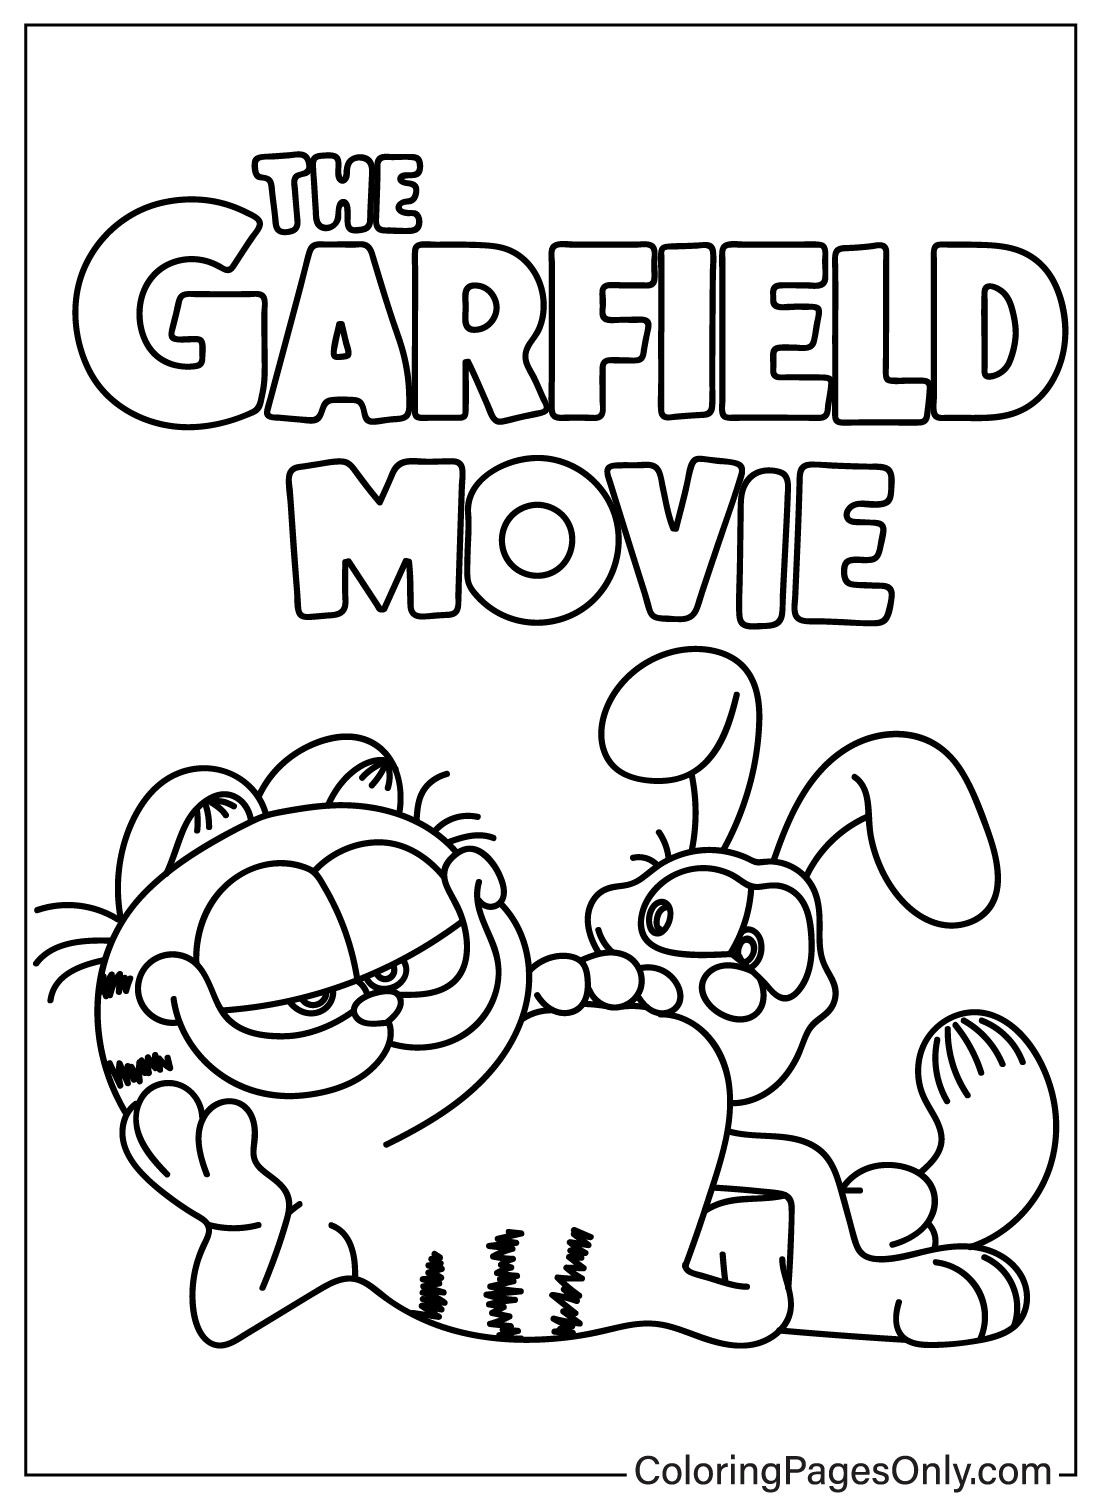 Garfield e Odie da colorare di Garfield